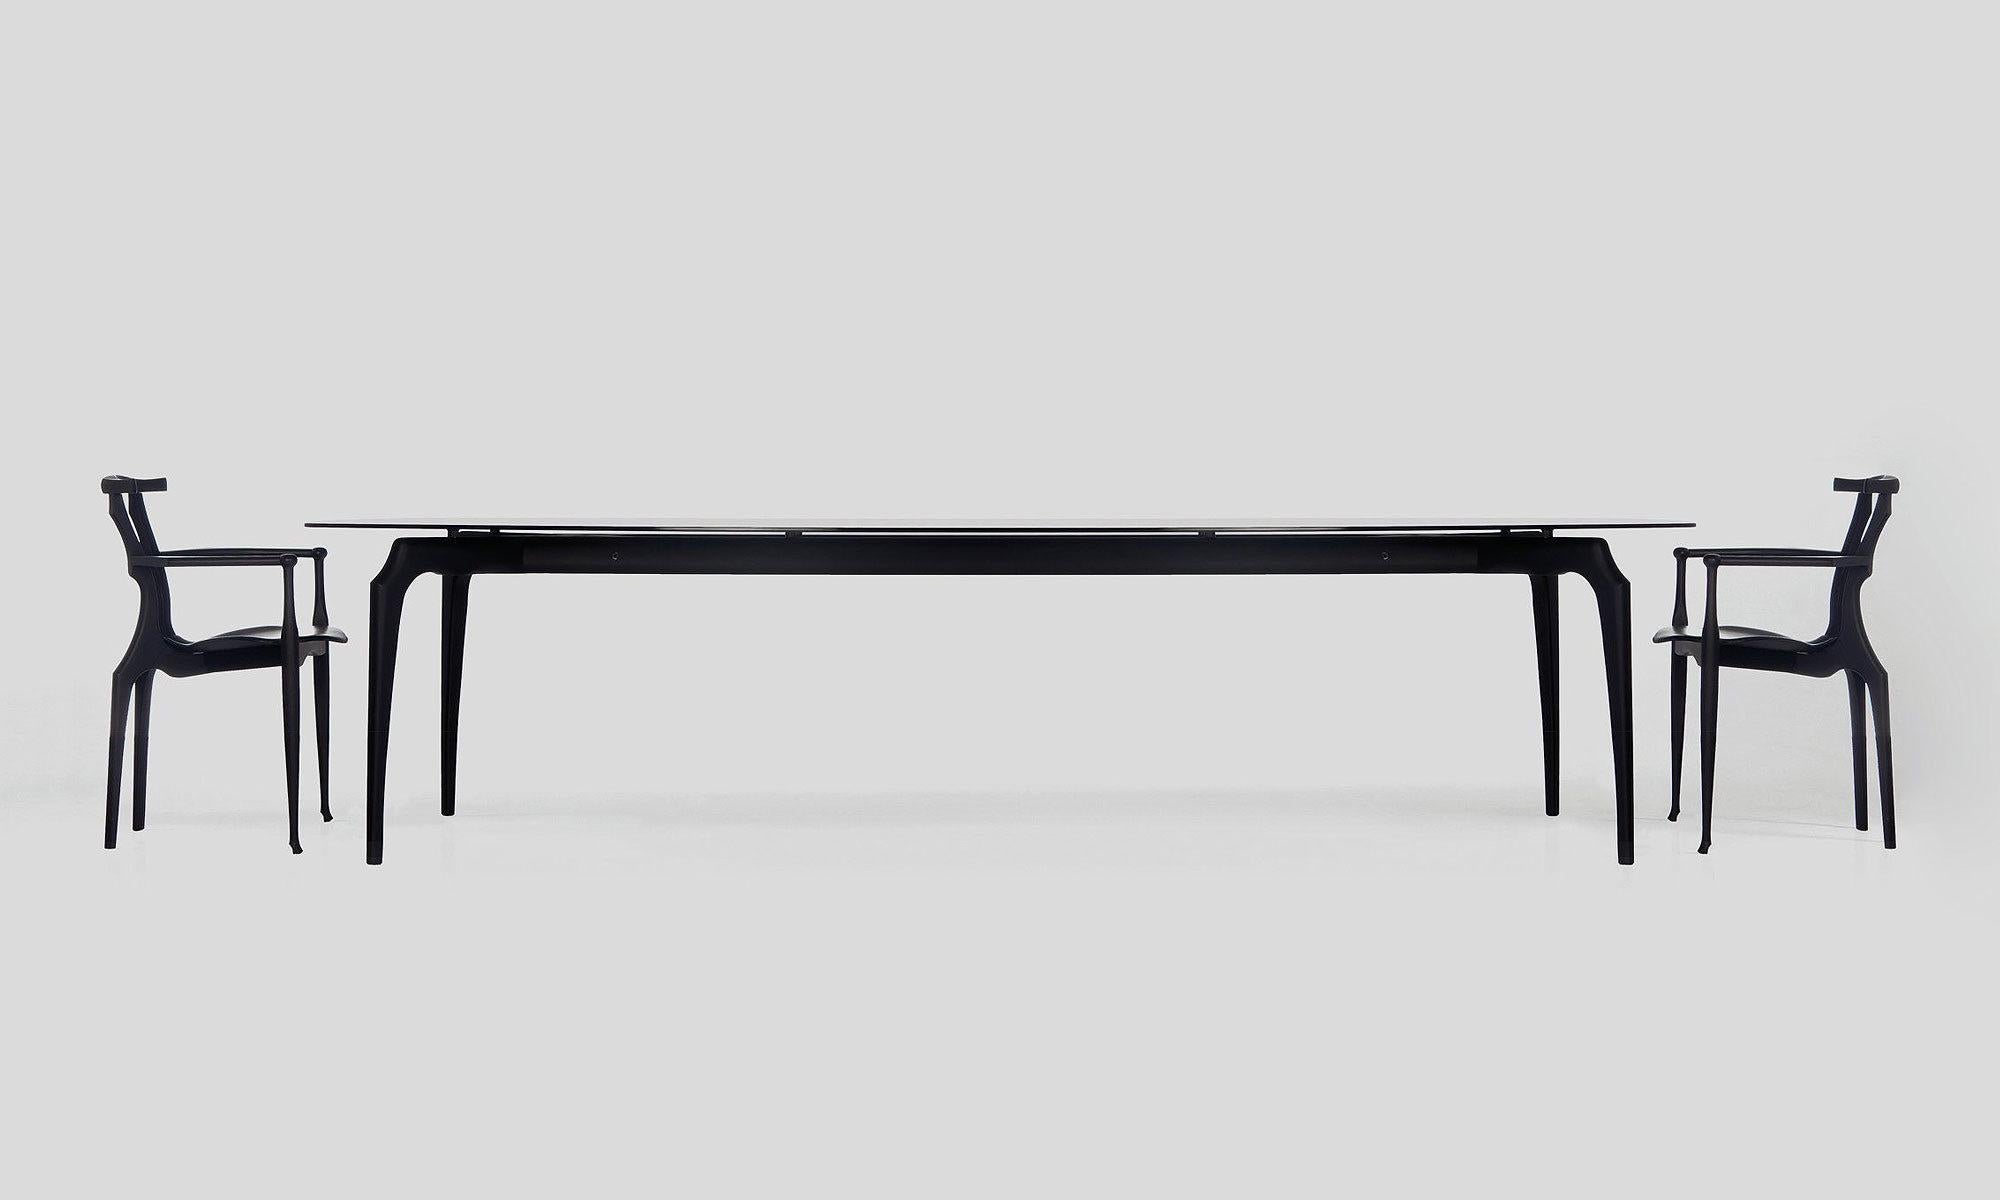 Table Gaulino conçue par Oscar Tusquets et fabriquée par BD Barcelona Design, circa 2010.

Oscar Tusquets, architecte, artiste et écrivain, a presque tout conçu au cours de sa longue carrière. En particulier, de nombreuses chaises, dont certaines